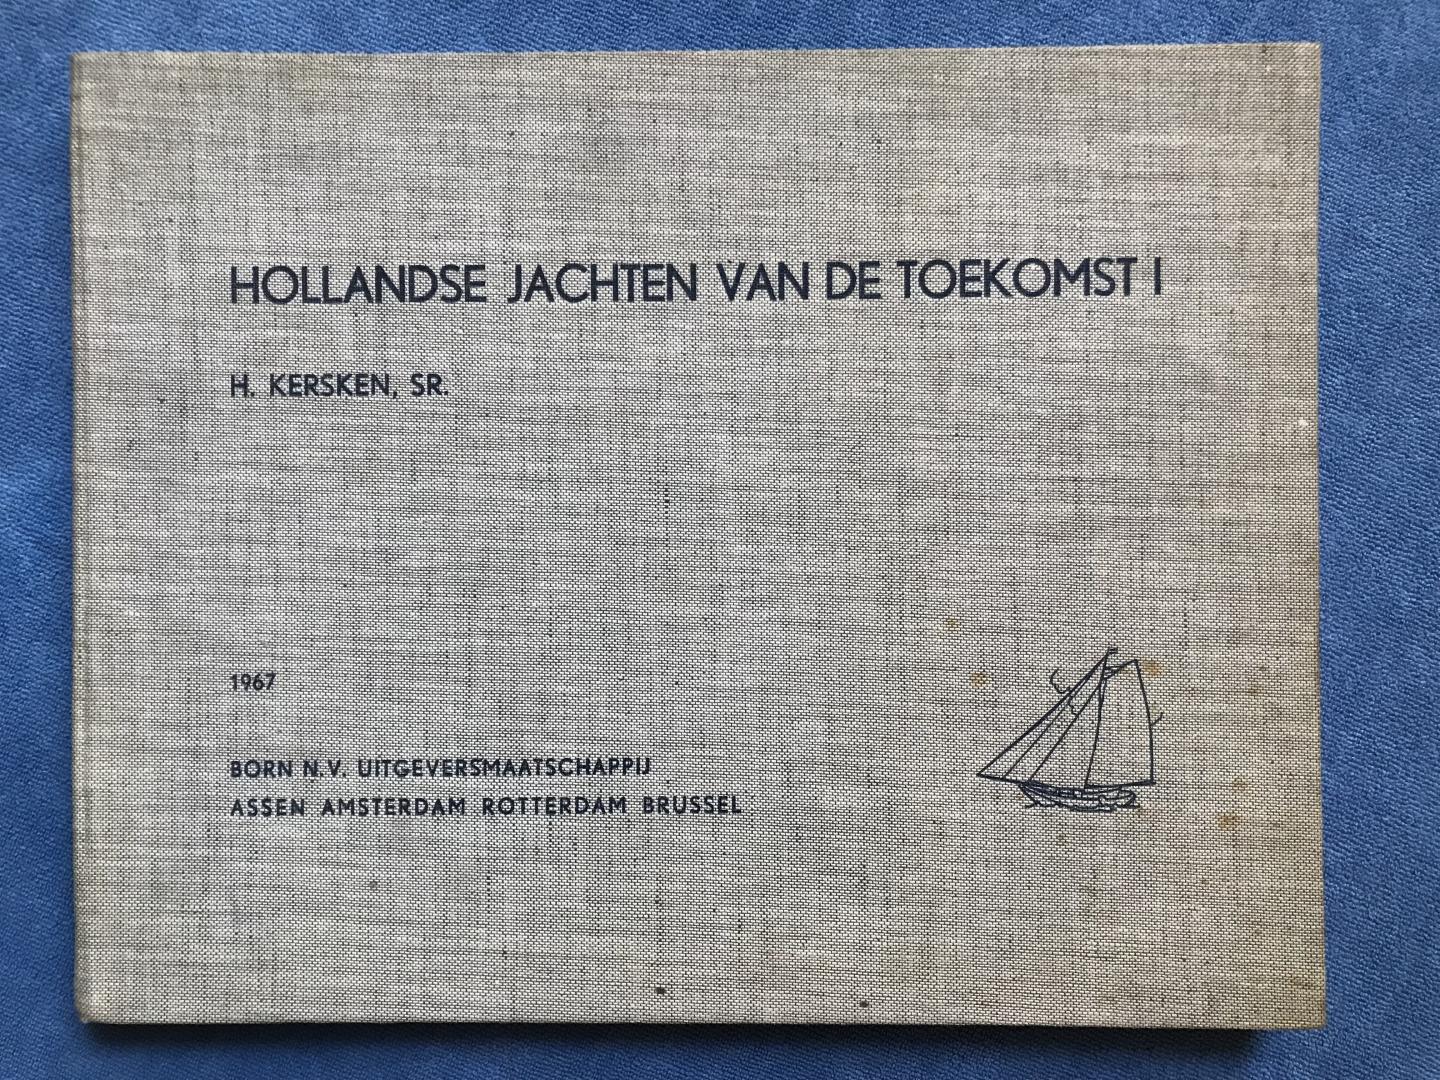 Kersken, H. (Sr.) - Hollandse Jachten van de Toekomst - 1